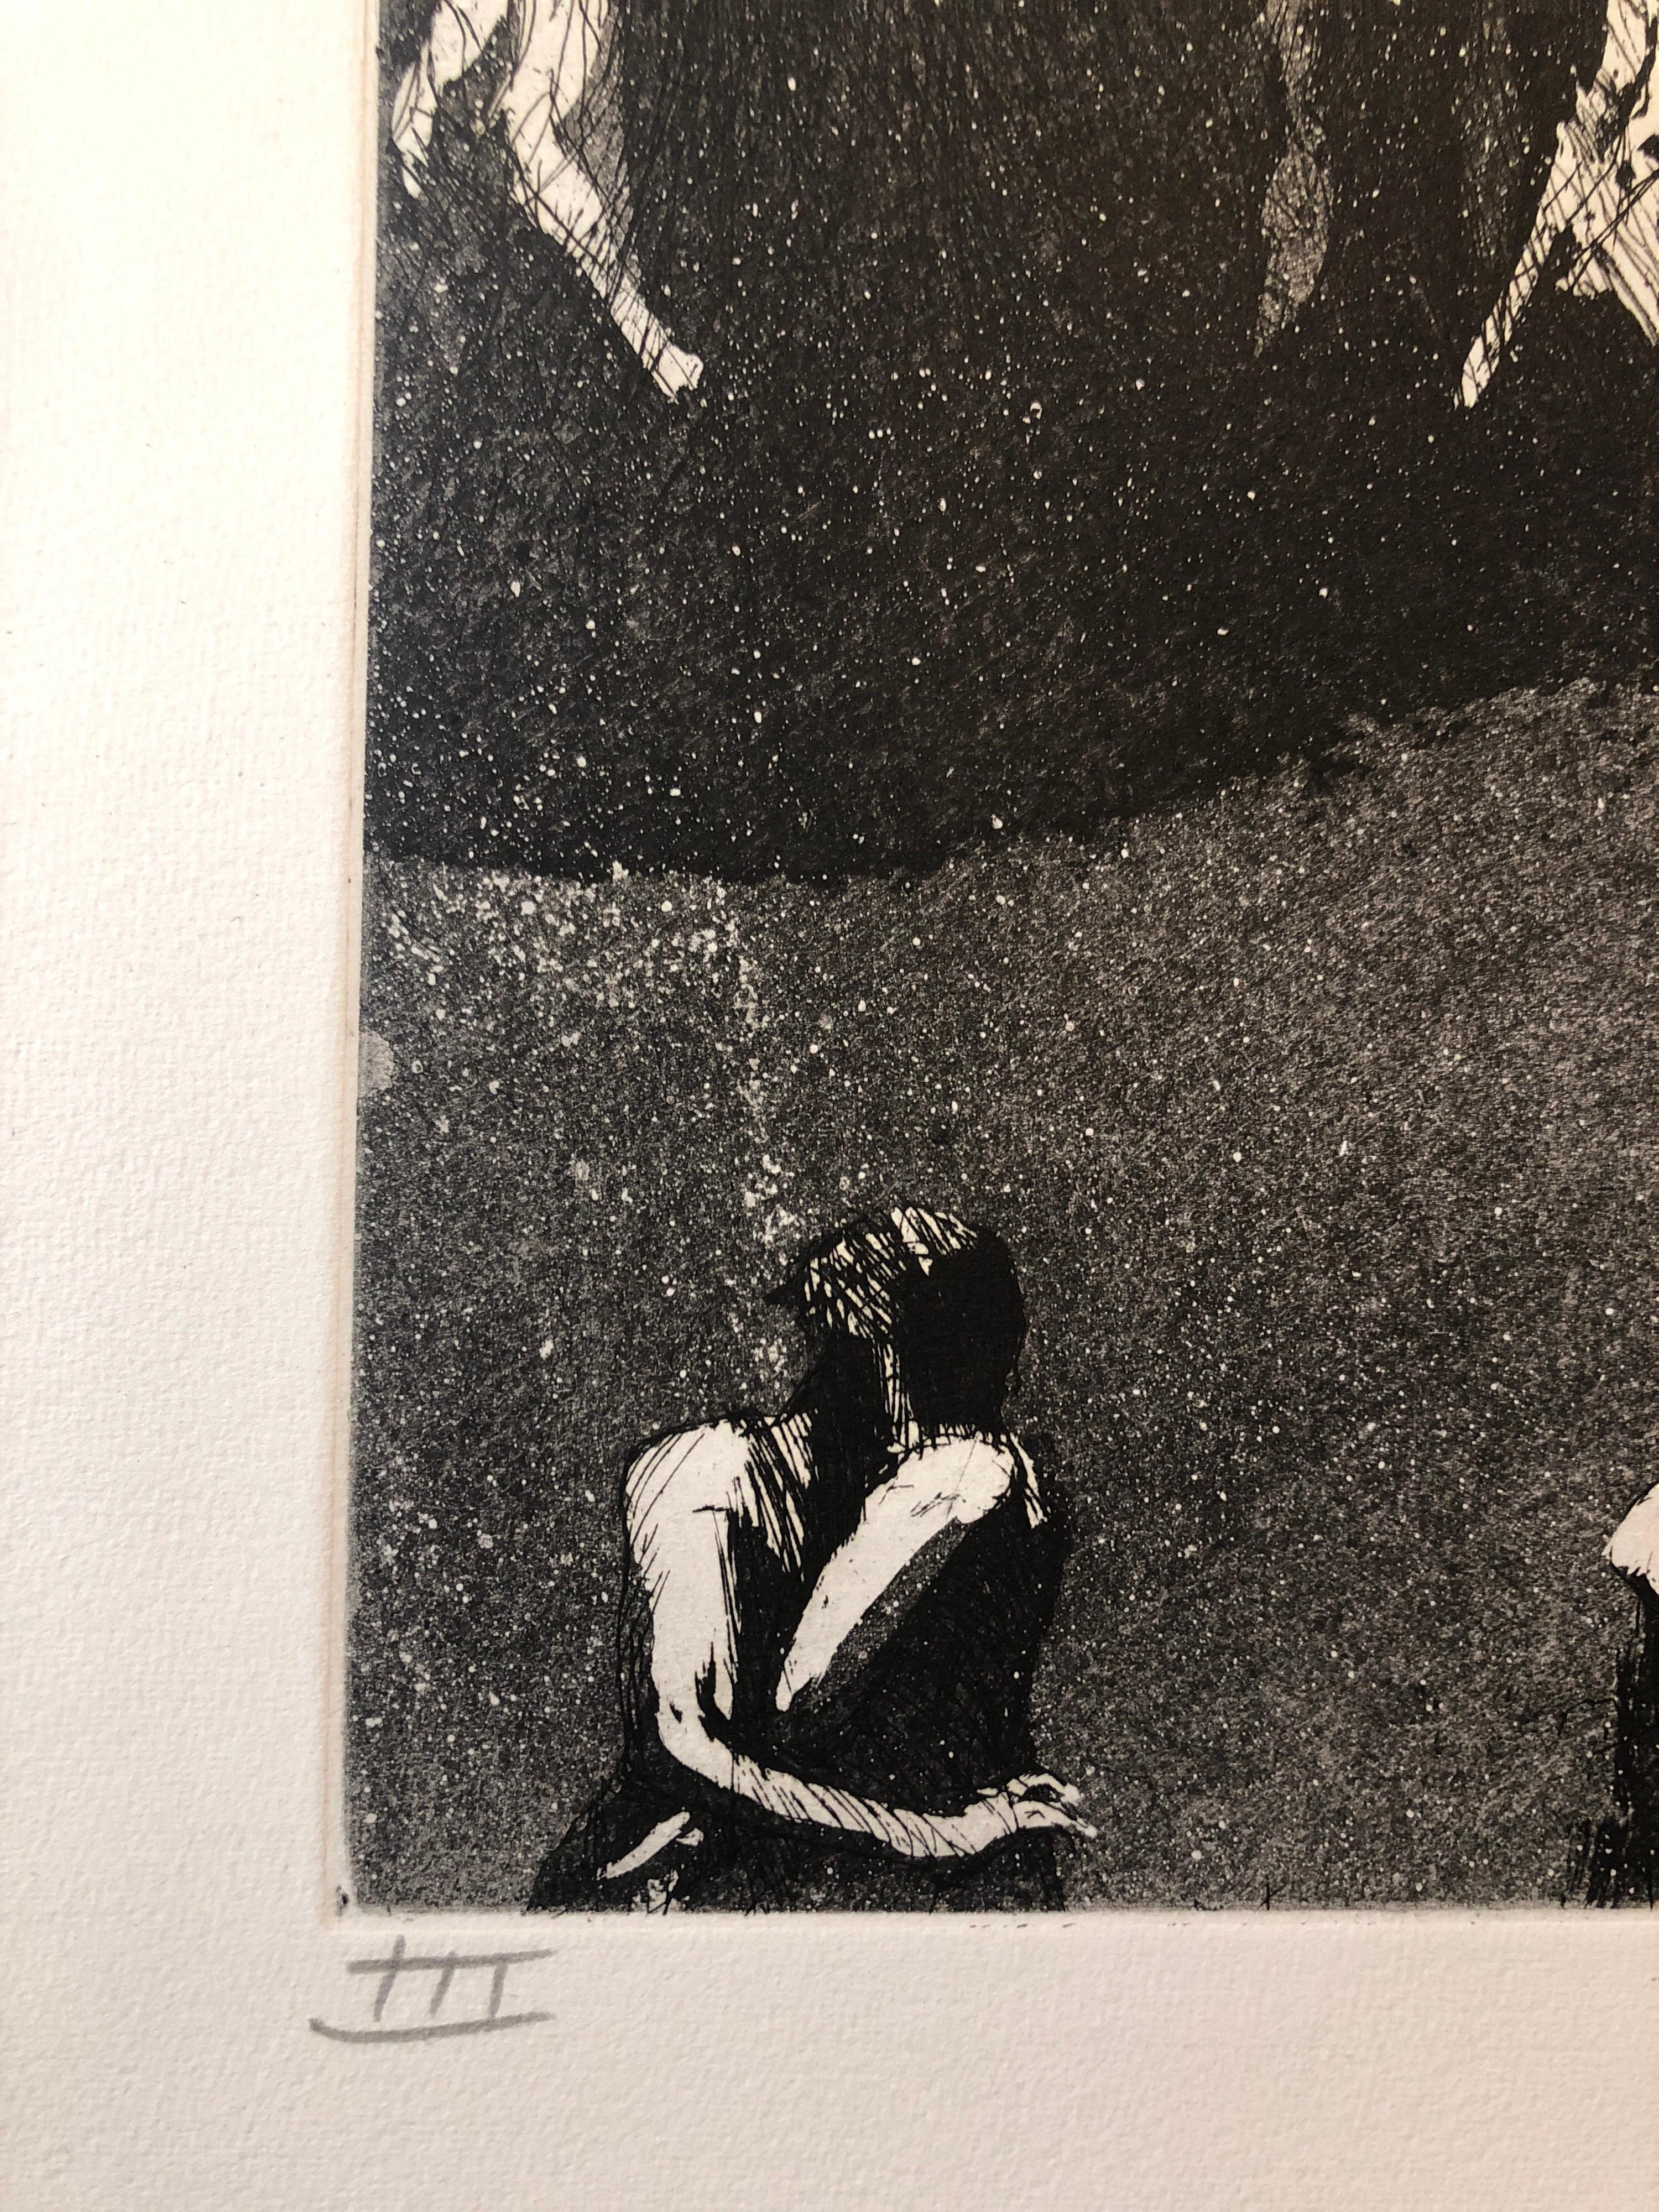 Jack Zajac, Amerikaner, geboren 1929
1964 Radierung und Aquatinta, handgedruckt auf Fabriano-Papier, mit Bleistift signiert und mit Auflage versehen. 
Ausgabe Römische Ziffer III
Bild: 12 9/16 x 8 5/8 in. (31,9 x 21,9 cm)
Blatt: 20 x 14 Zoll (50,8 x